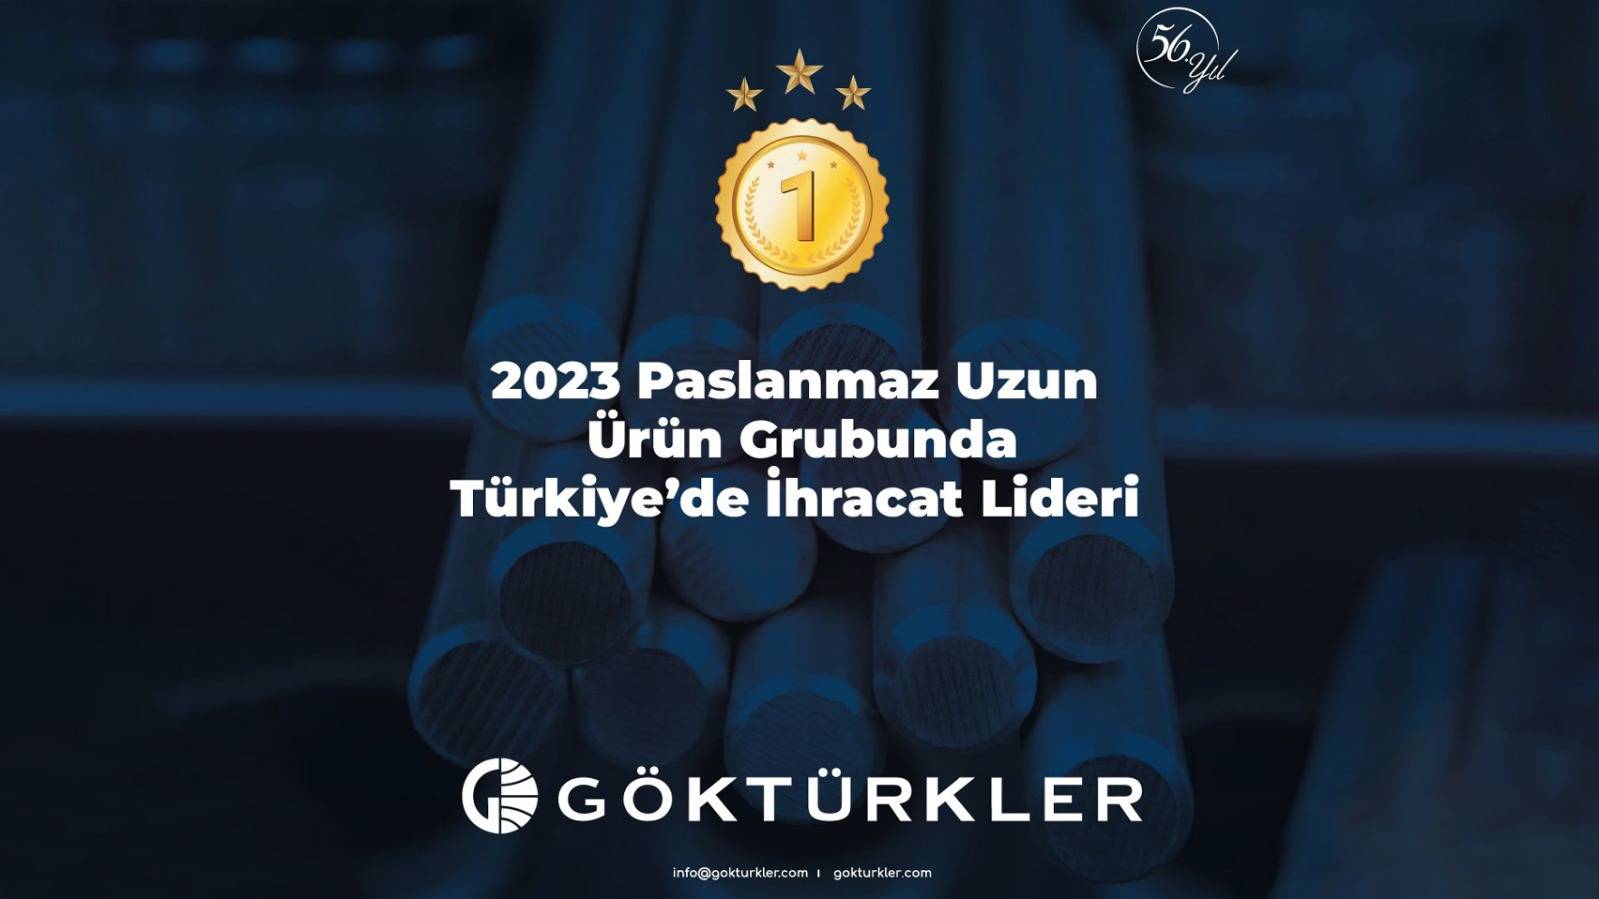 Göktürkler Çelik, Türkiye'nin Paslanmaz Çelik Uzun Ürün Grubu İhracatında Liderlik Tahtında